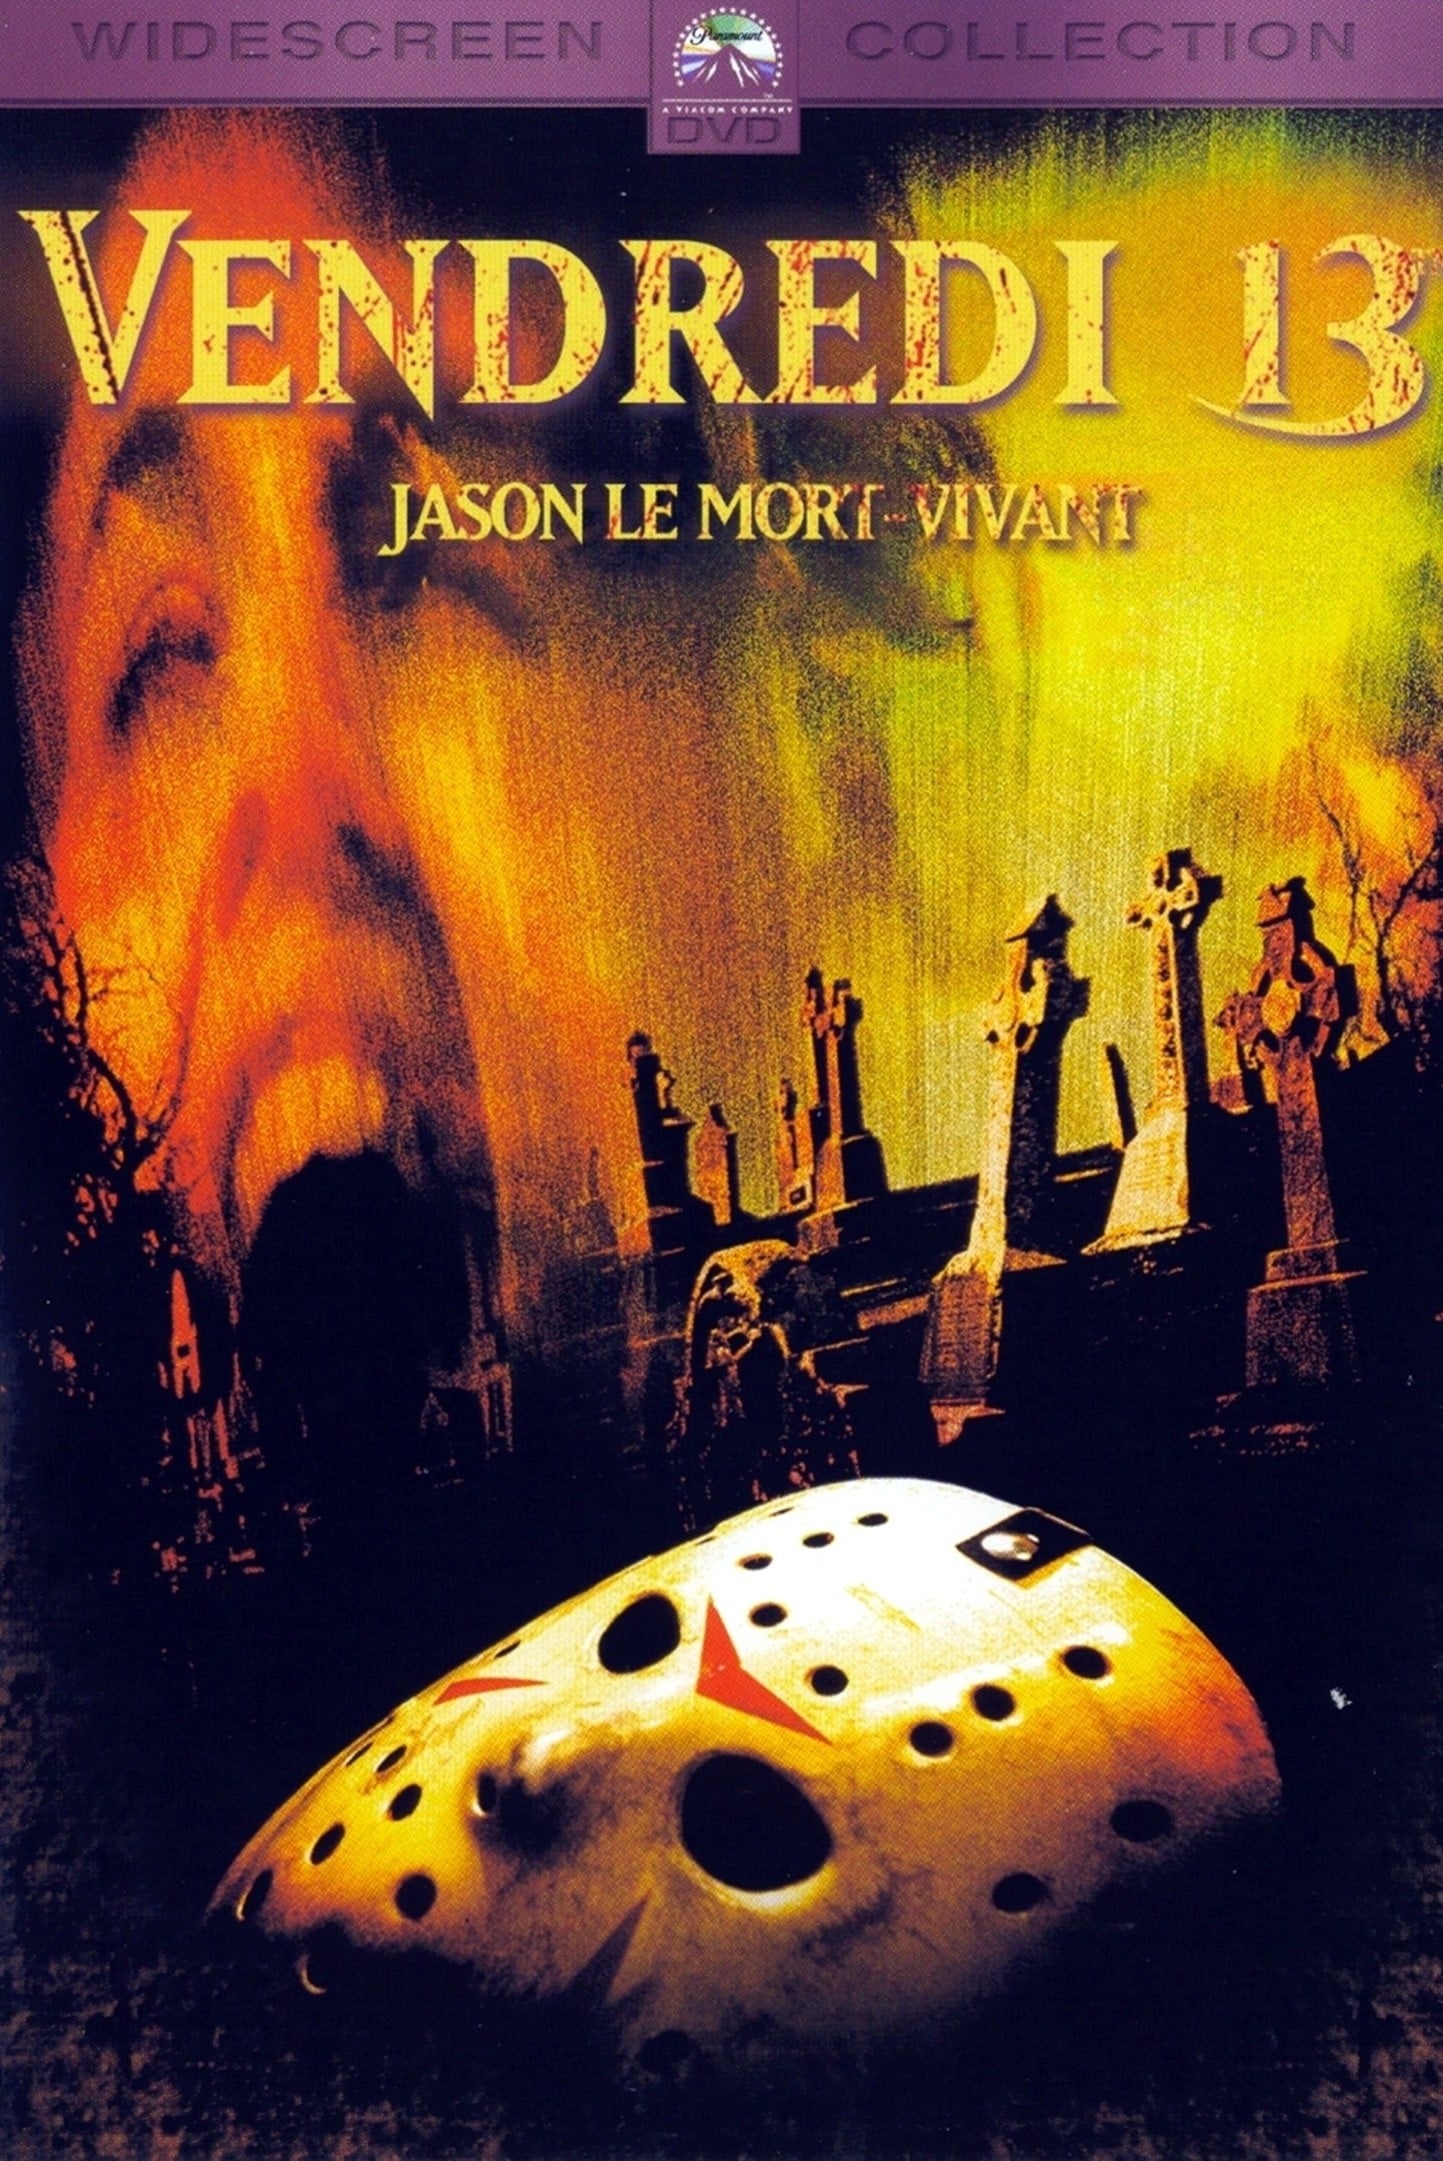 Vendredi 13, chapitre 6 : Jason le mort-vivant (1986) Film Complet - 13 Jeux De Mort Streaming